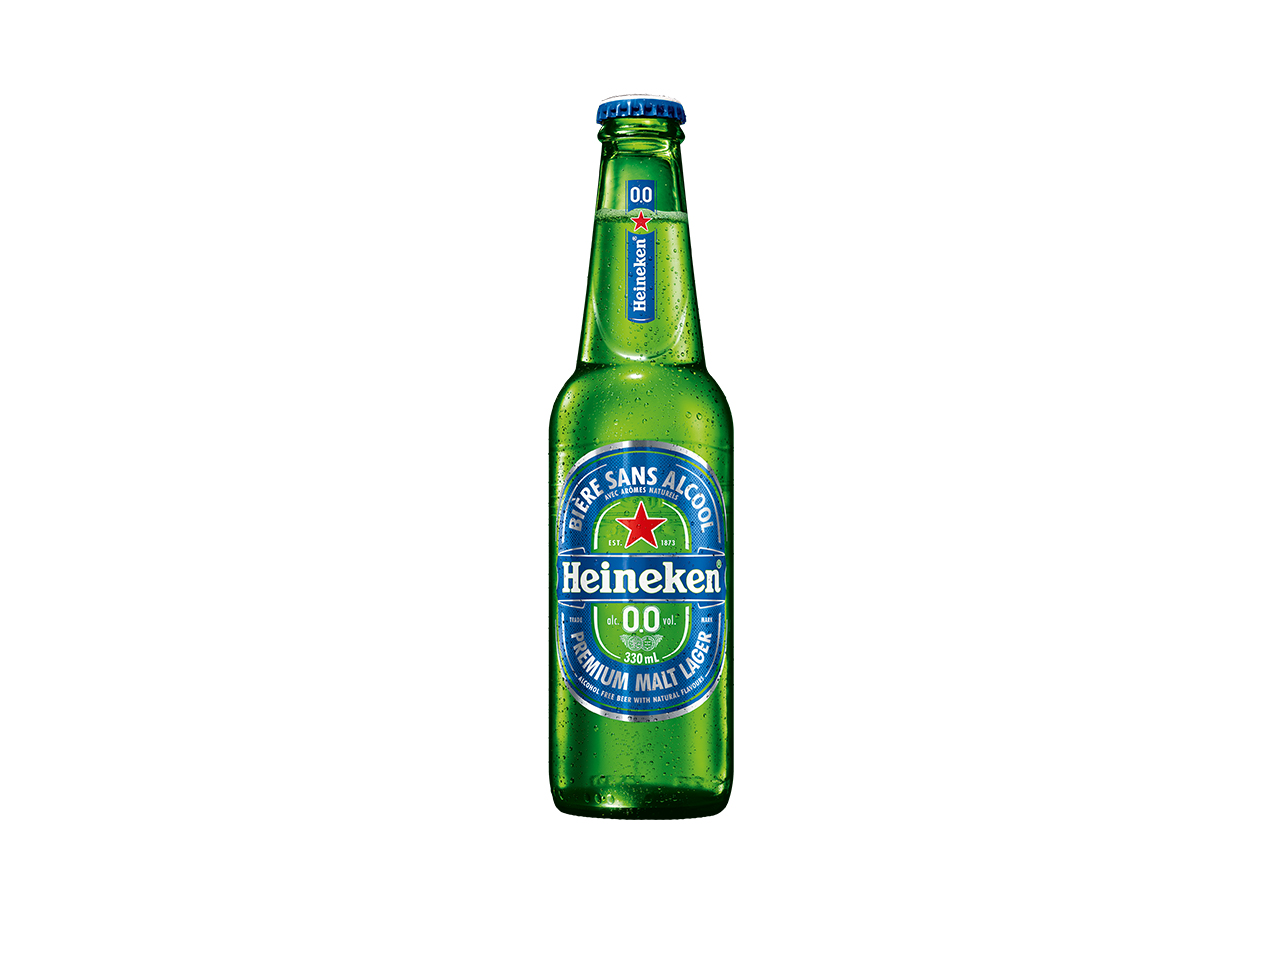 Bottle of Heineken 0.0 non-alcoholic beer